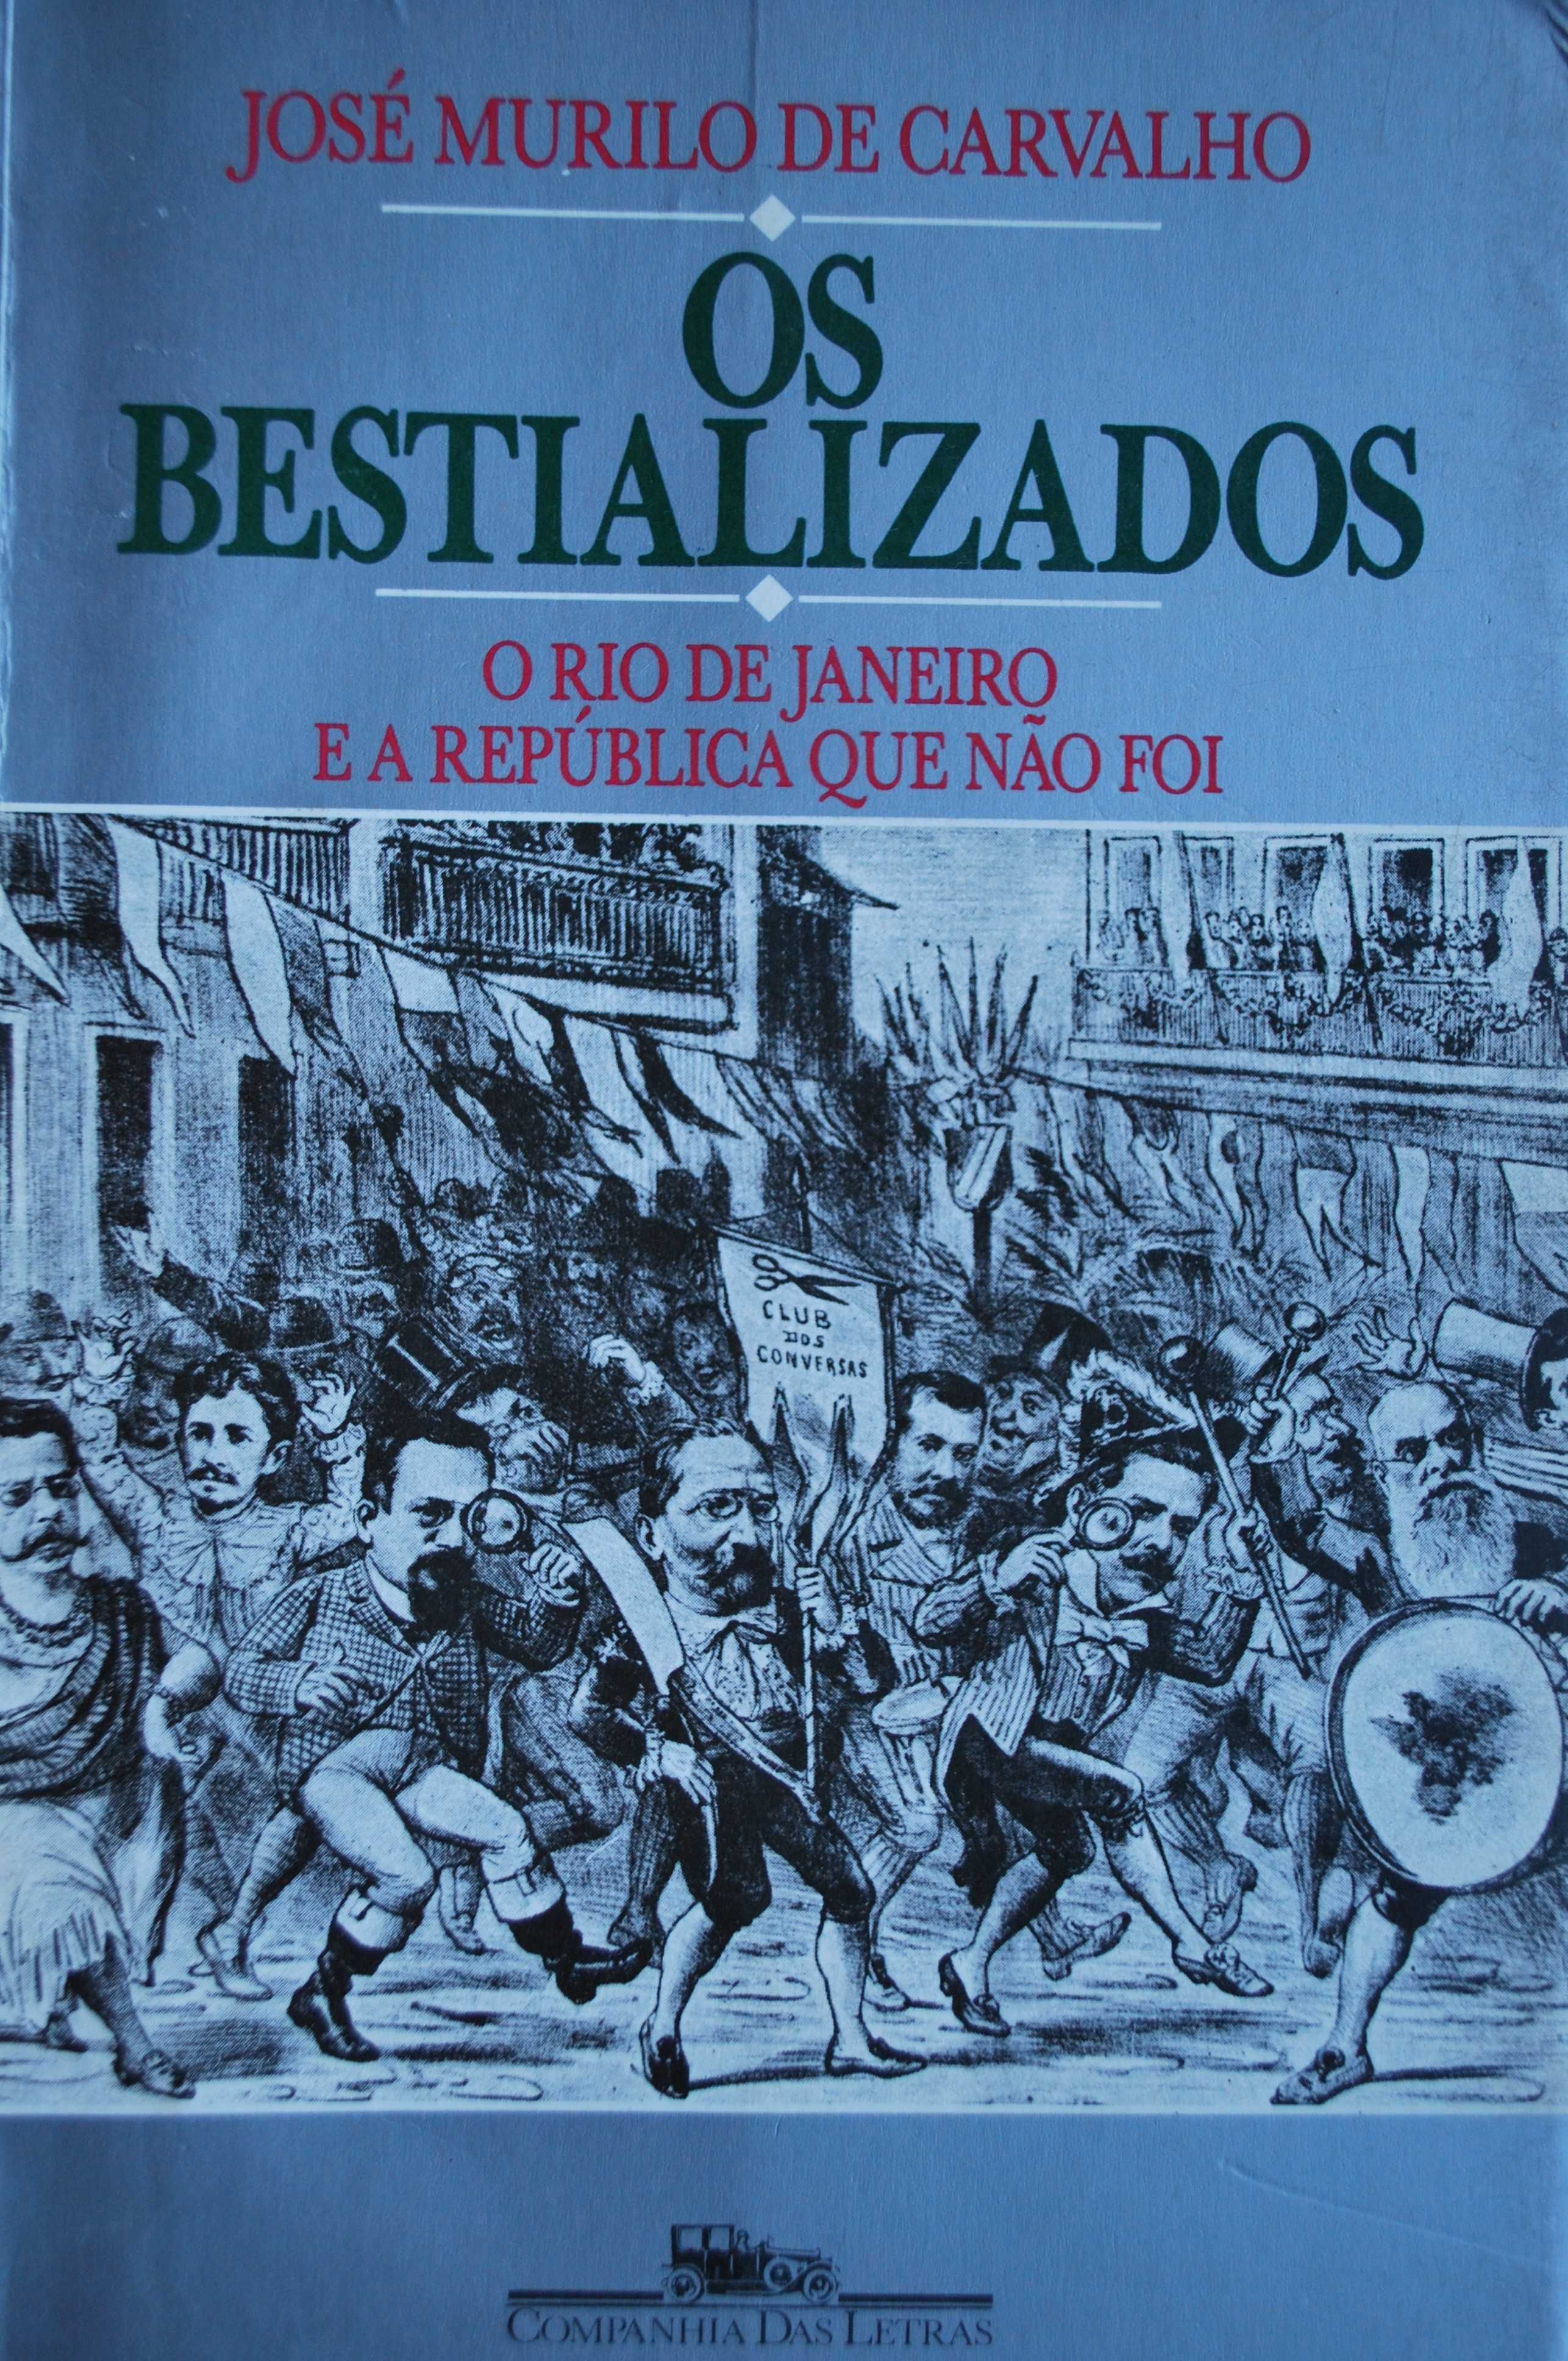 Os Bestializados de José Murilo de Carvalho